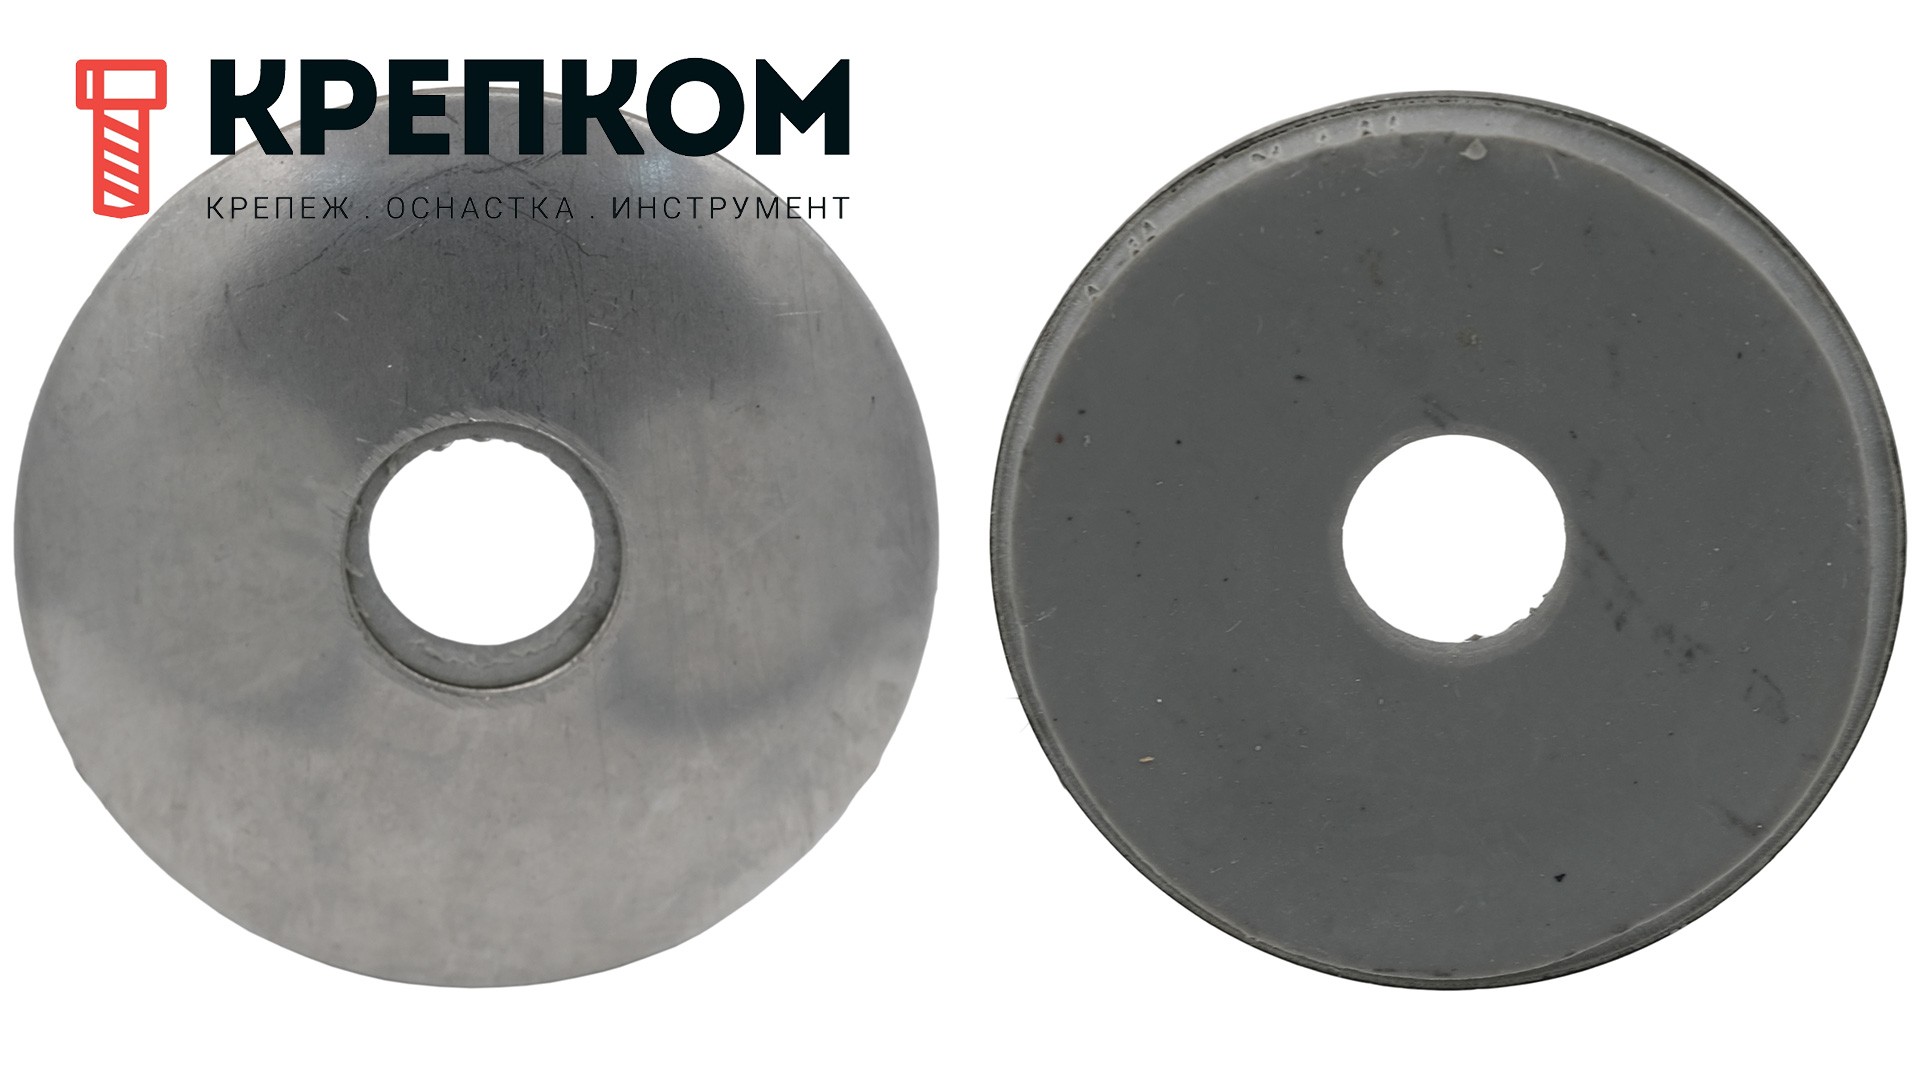 Шайба кровельная с резиновой прокладкой EPDM WS 9260 (9055), нержавеющая сталь А2 - фото